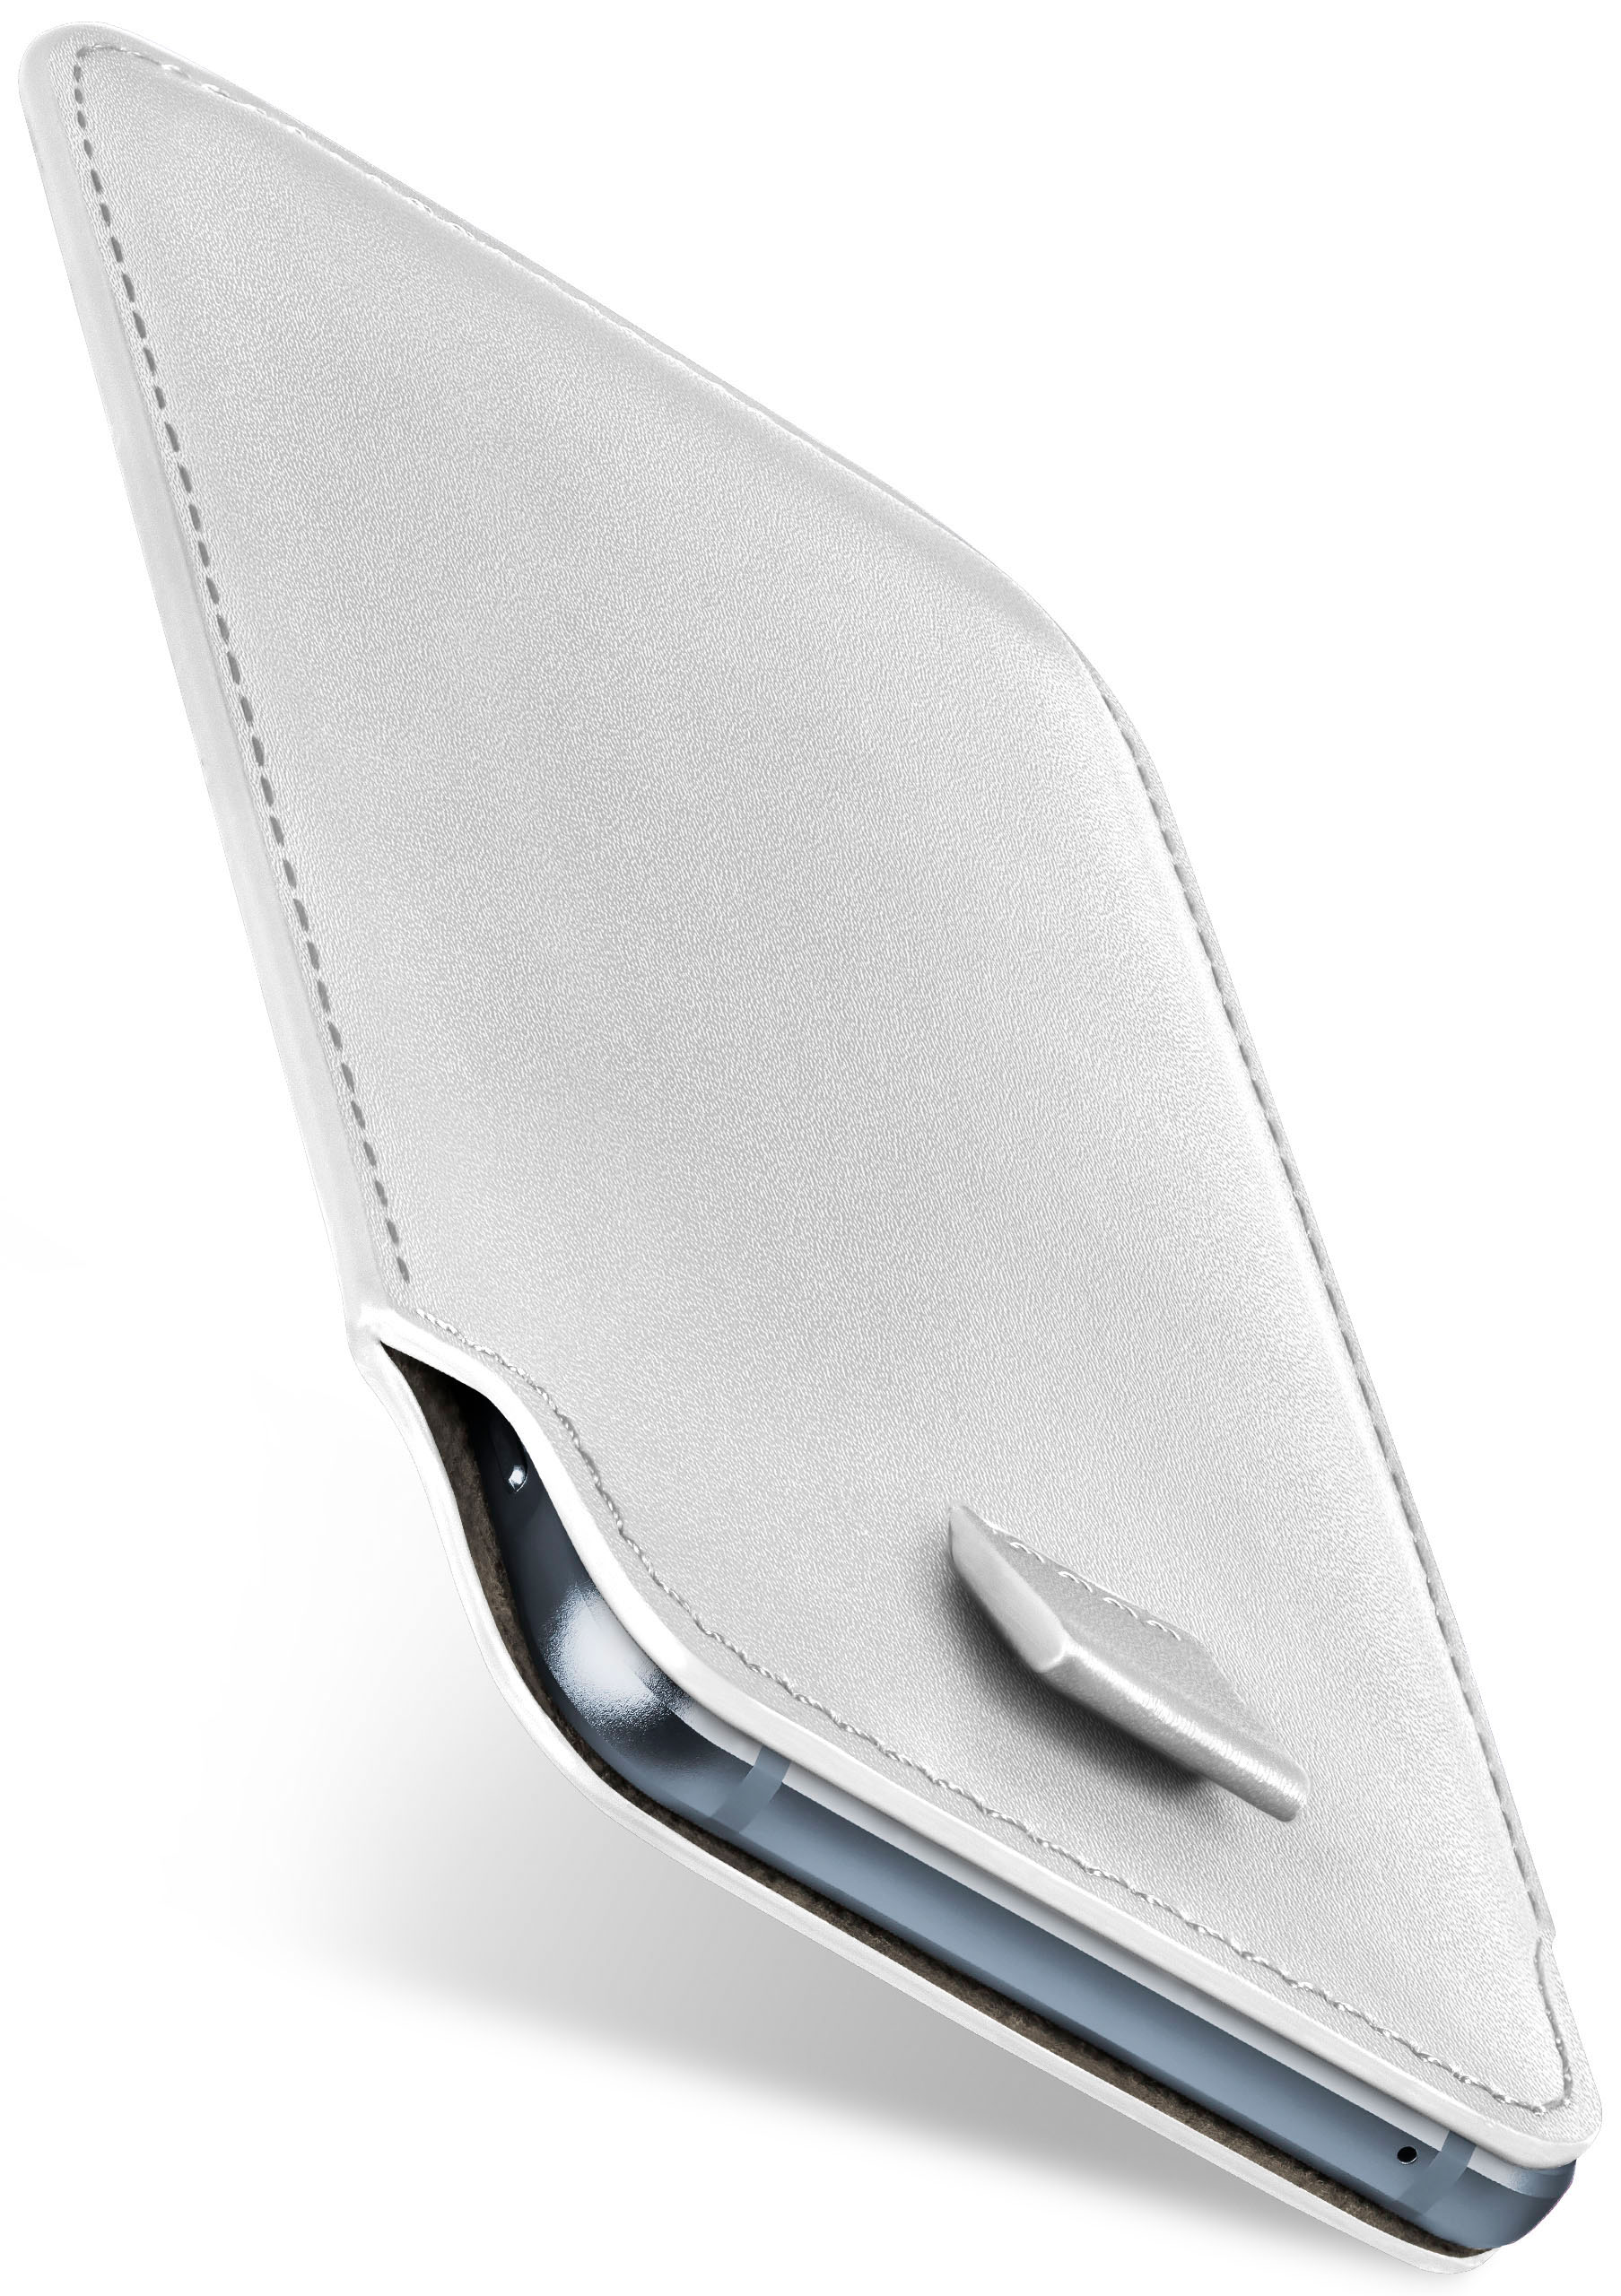 Case, Full Slide MOEX 3.1, Nokia, Shiny-White Cover,